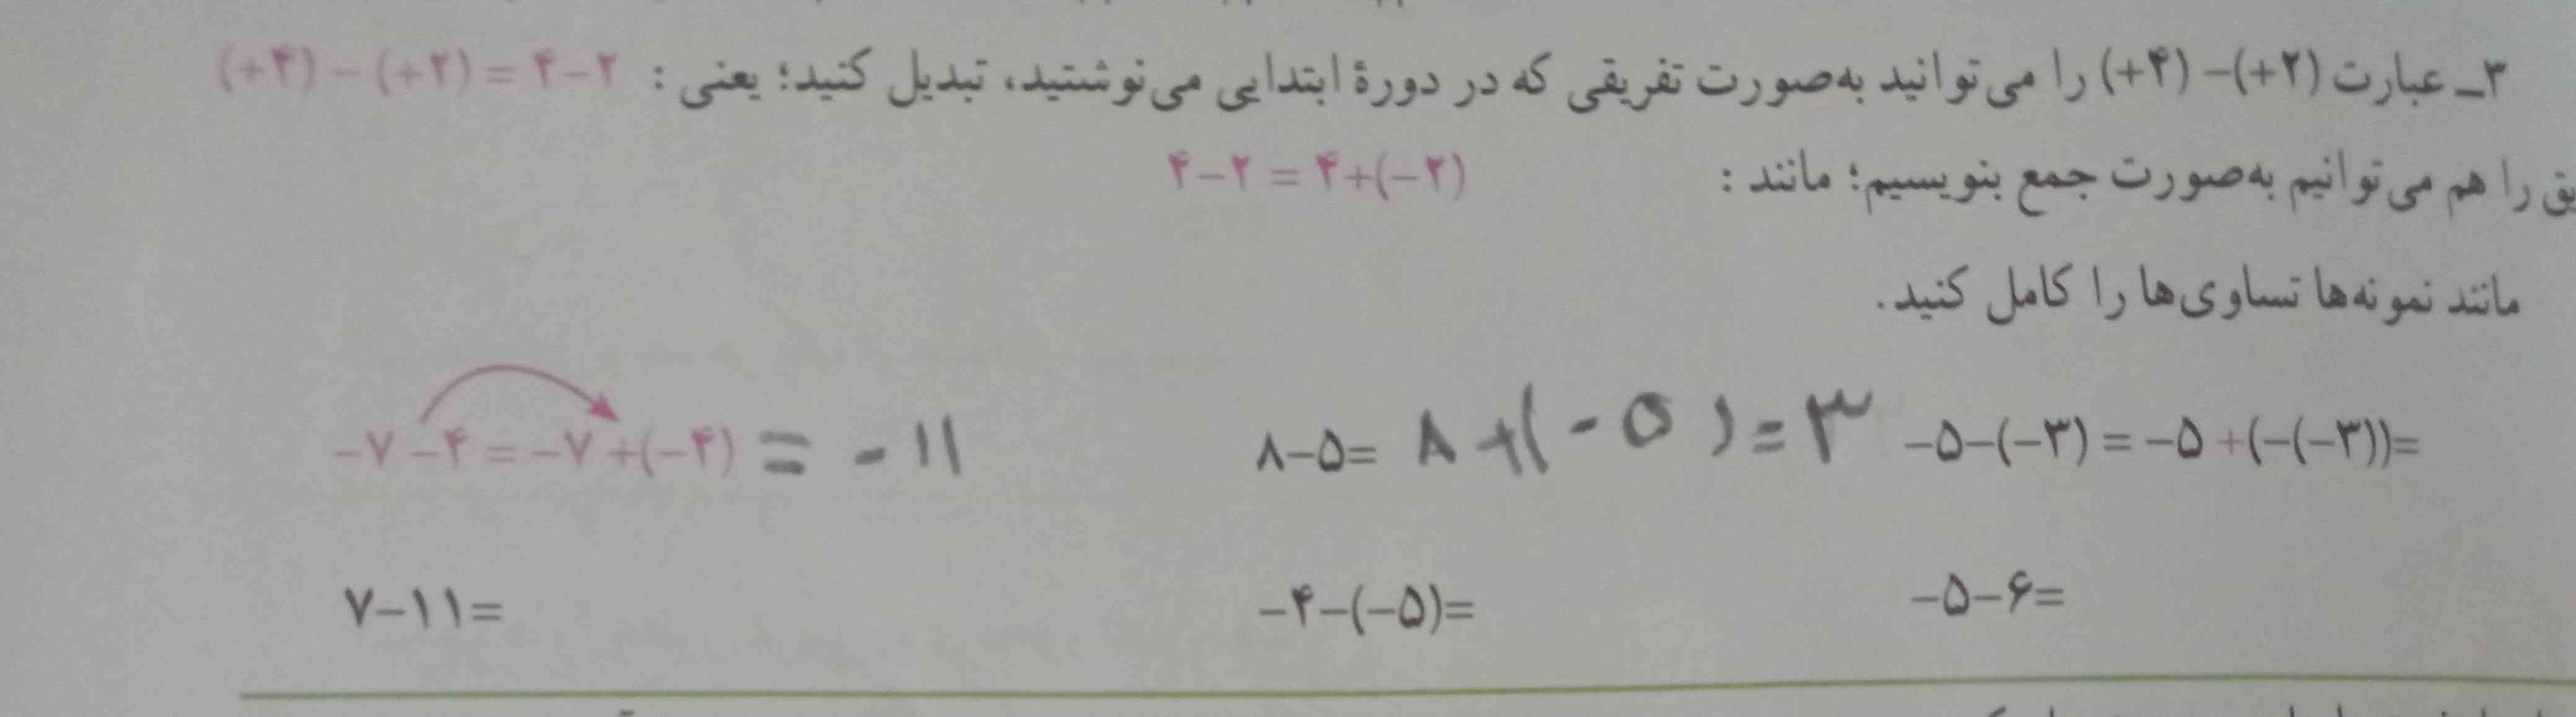 دوستان جواب سوال سه صفحه ۱۵ ریاضی رو کسی می دونه و میشه توضیح بده چجوری حل میشه؟ ممنون